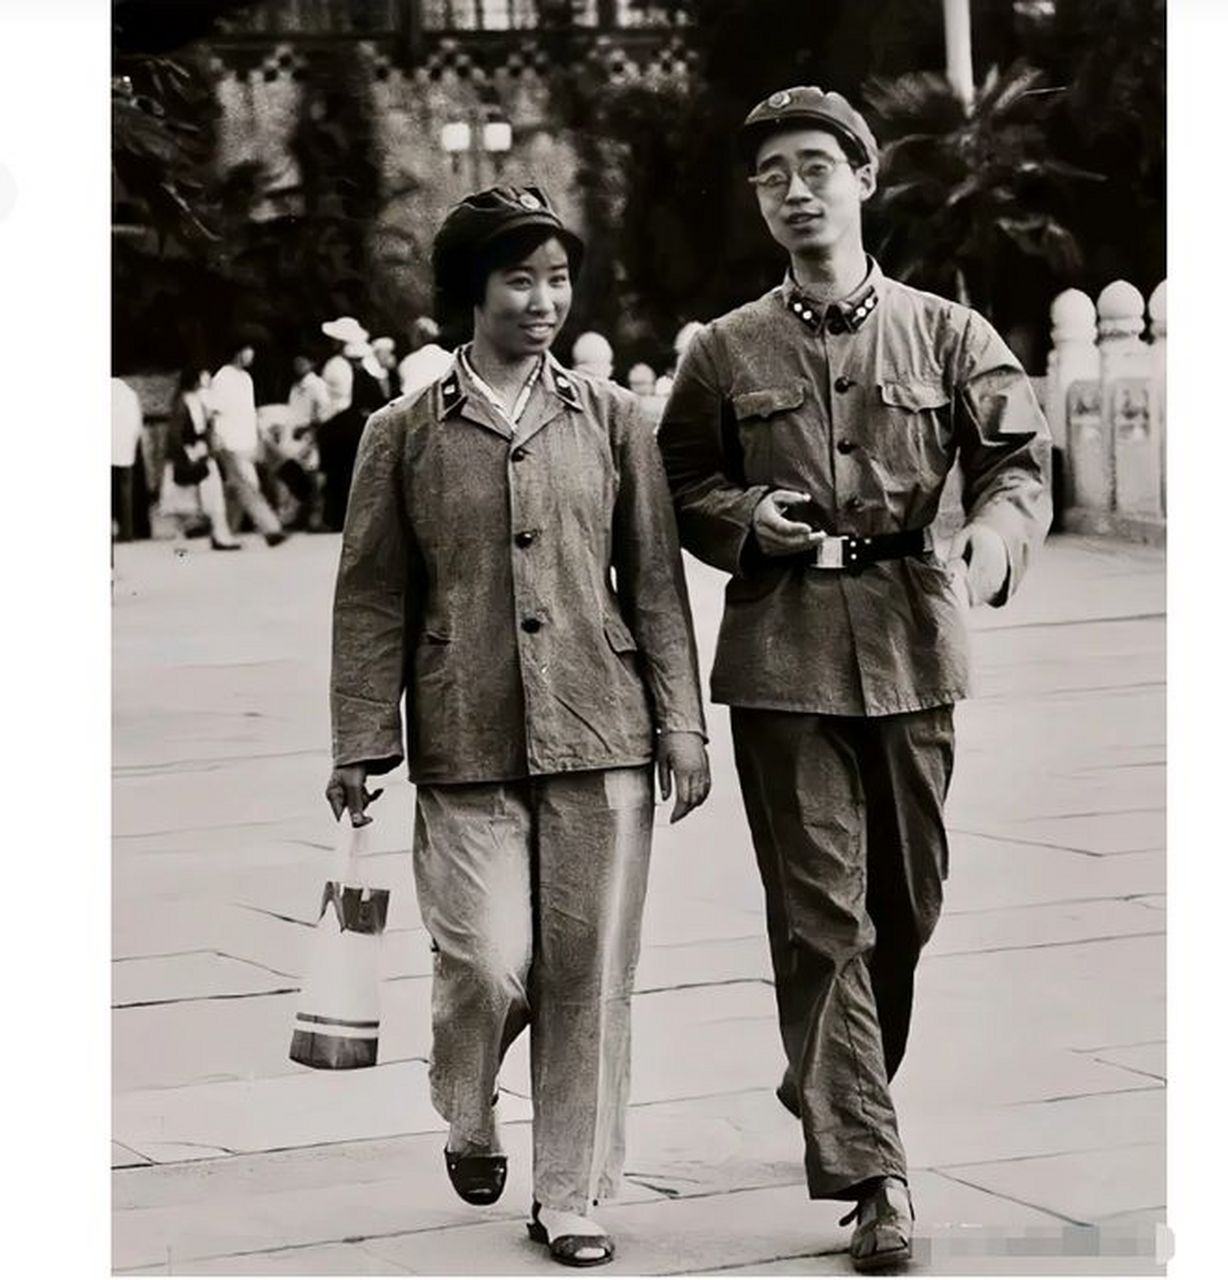 在60年代的某一天,街头出现了两名穿着解放军制服的年轻人,他们一男一